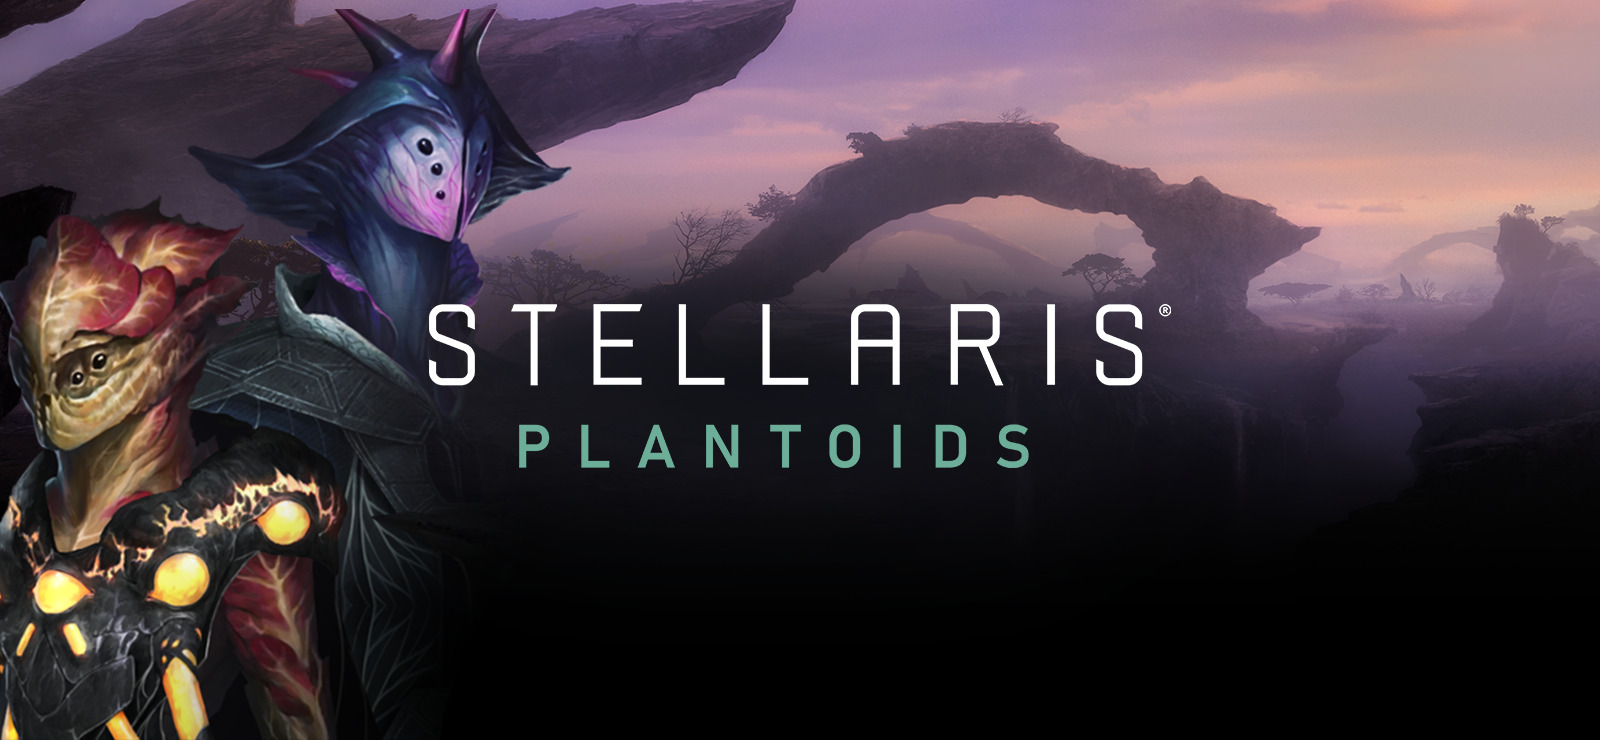 Stellaris plantoids species pack review